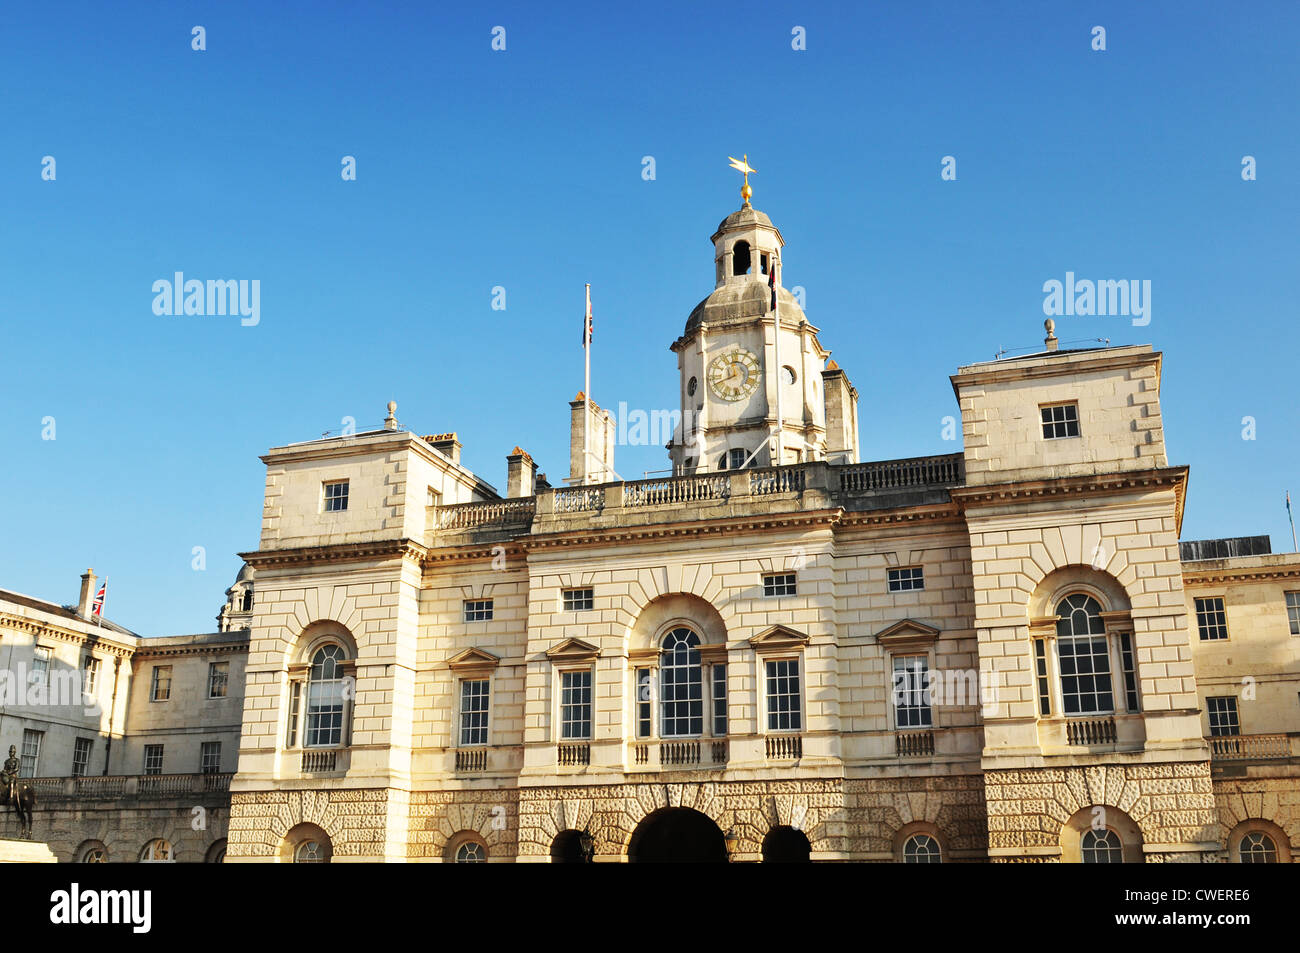 Détail architectural de la Maison Royale Guards building à Londres, Royaume-Uni Banque D'Images